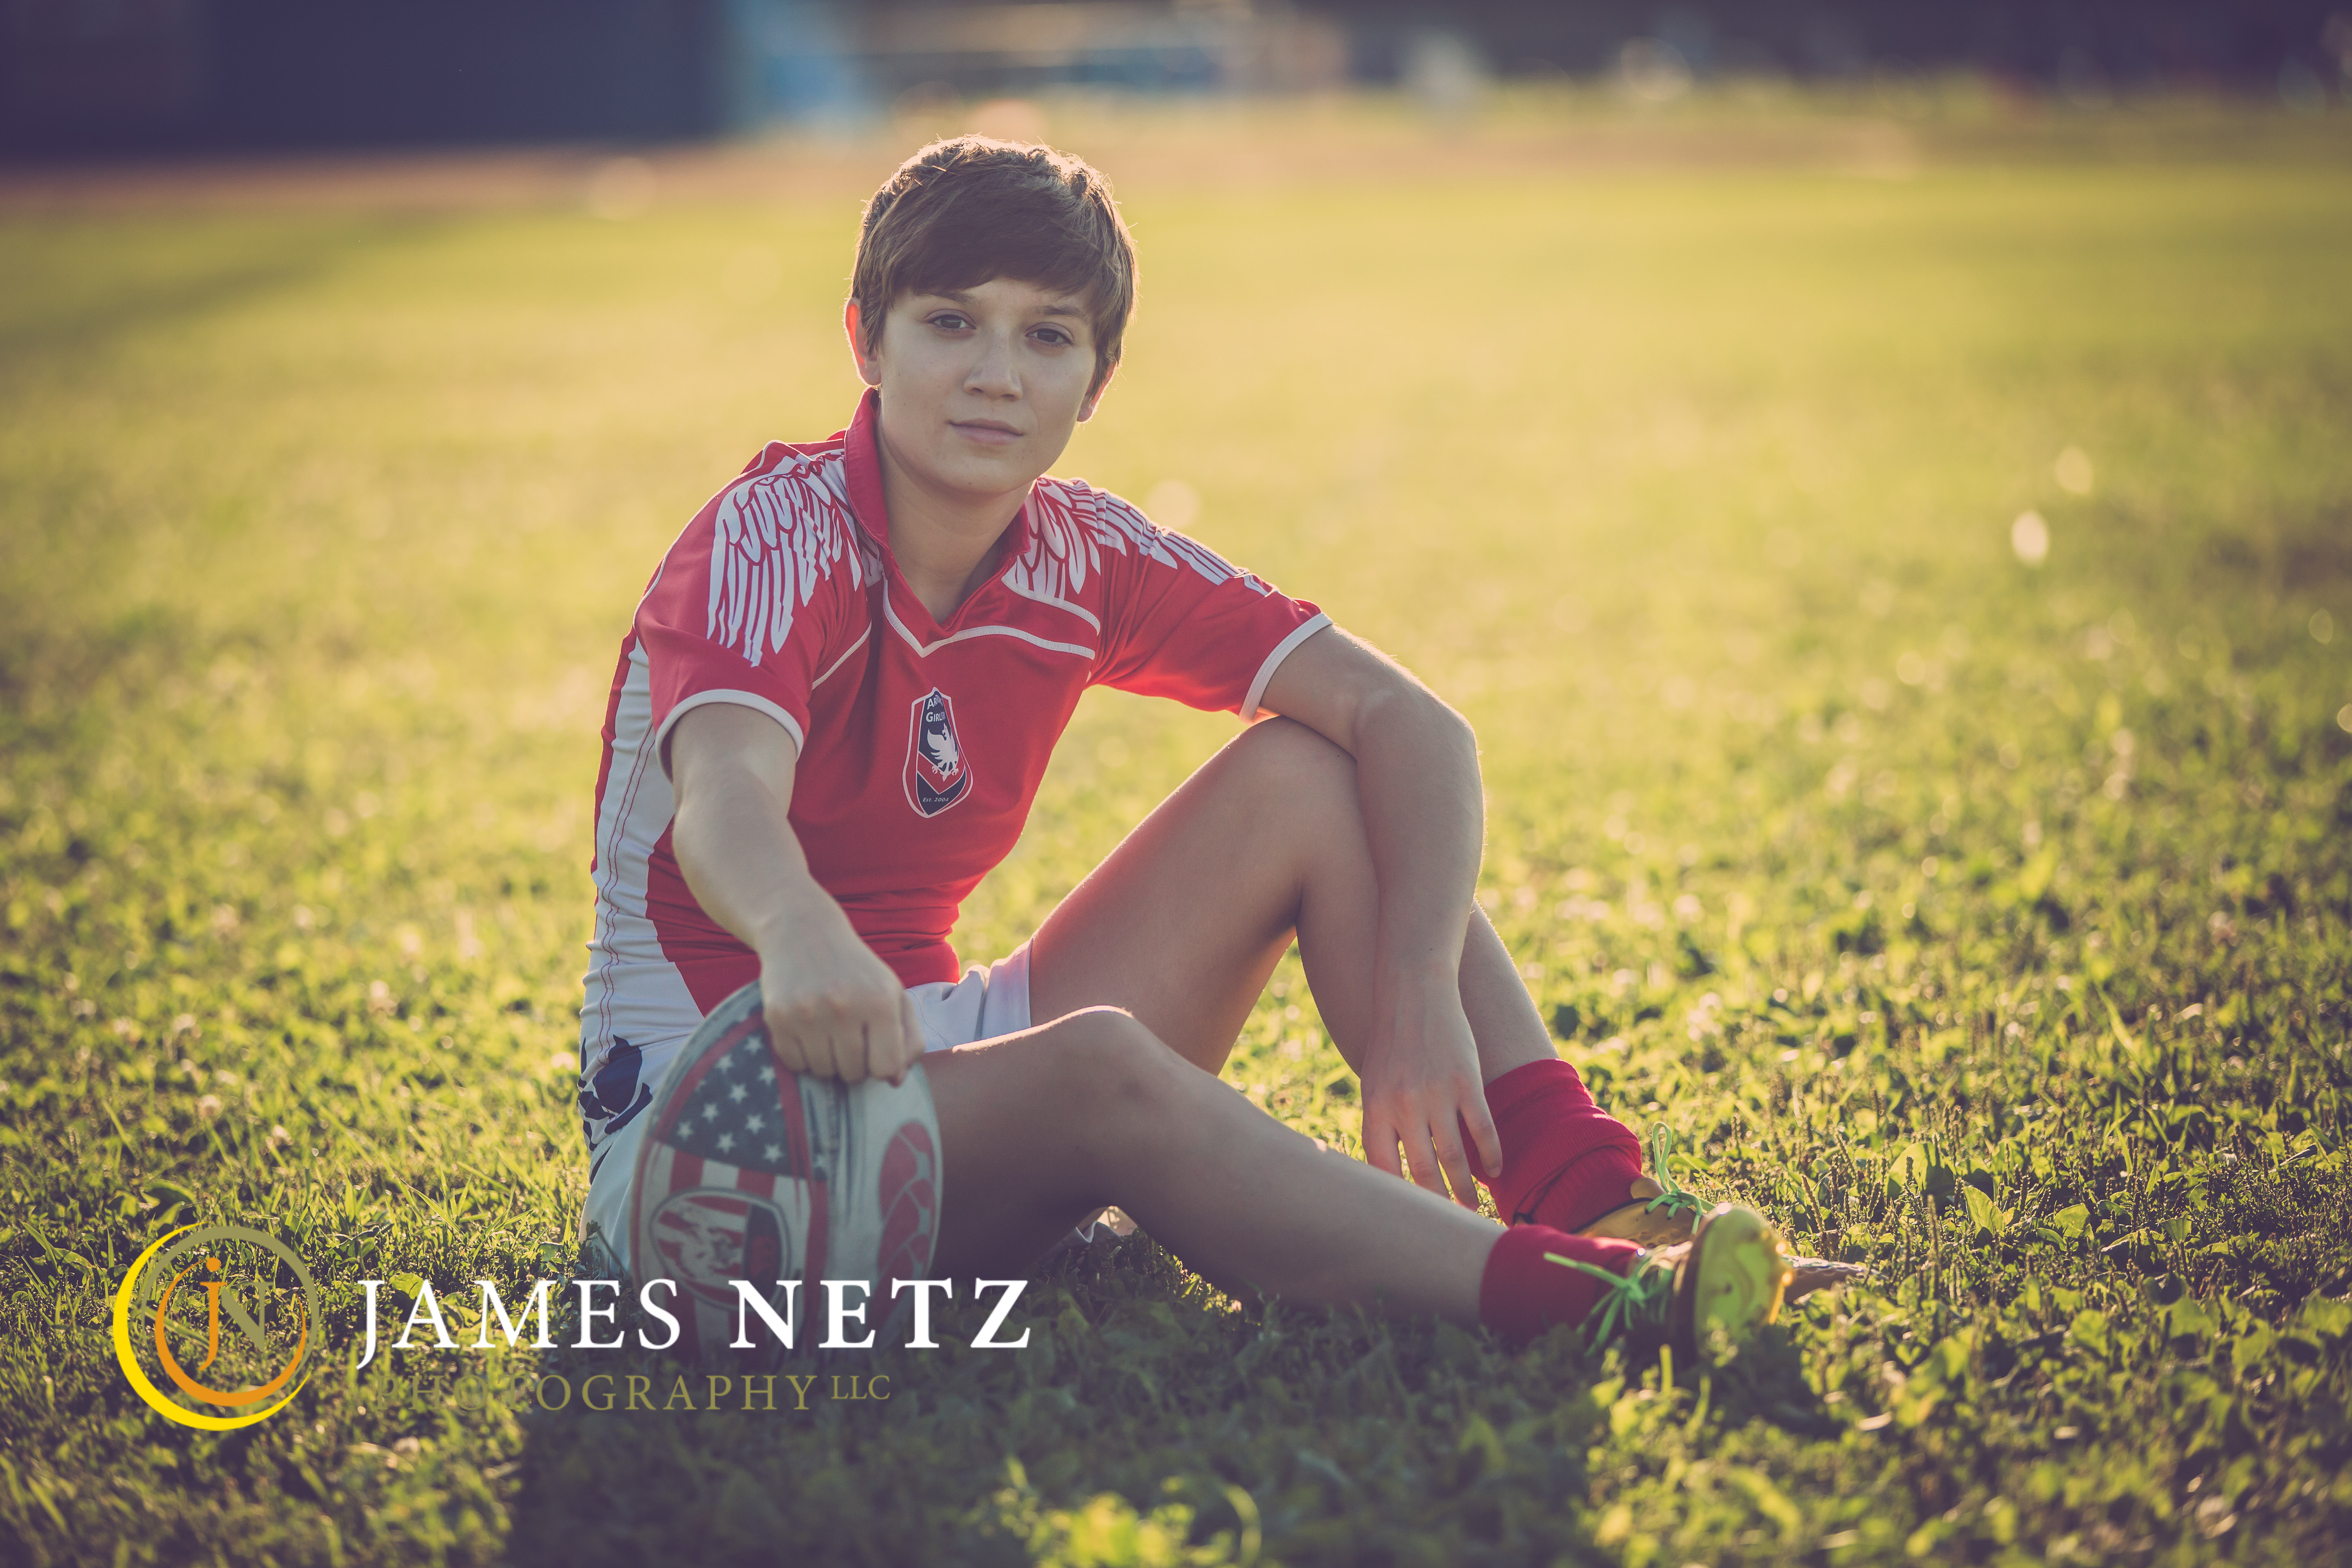 James Netz (c) P2-2-4